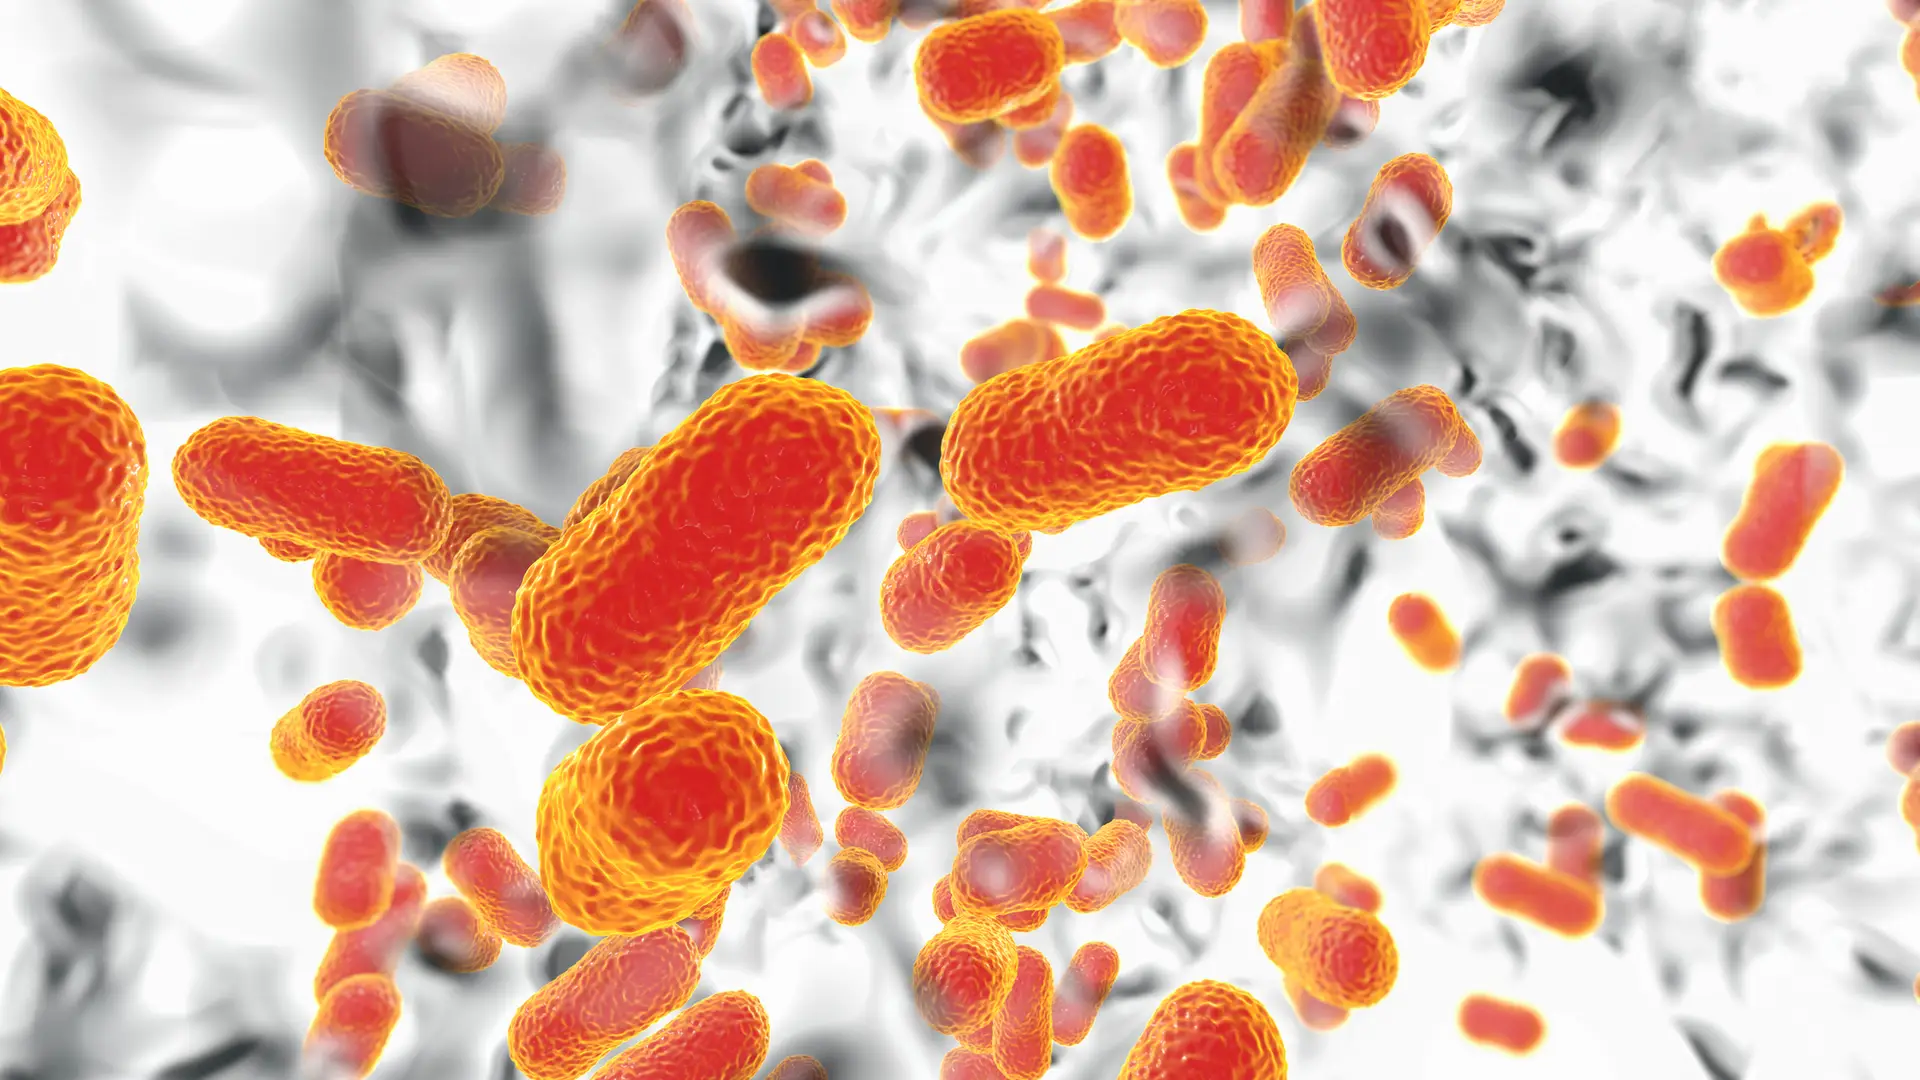 Infeções bacterianas foram uma das principais causas de morte em 2019